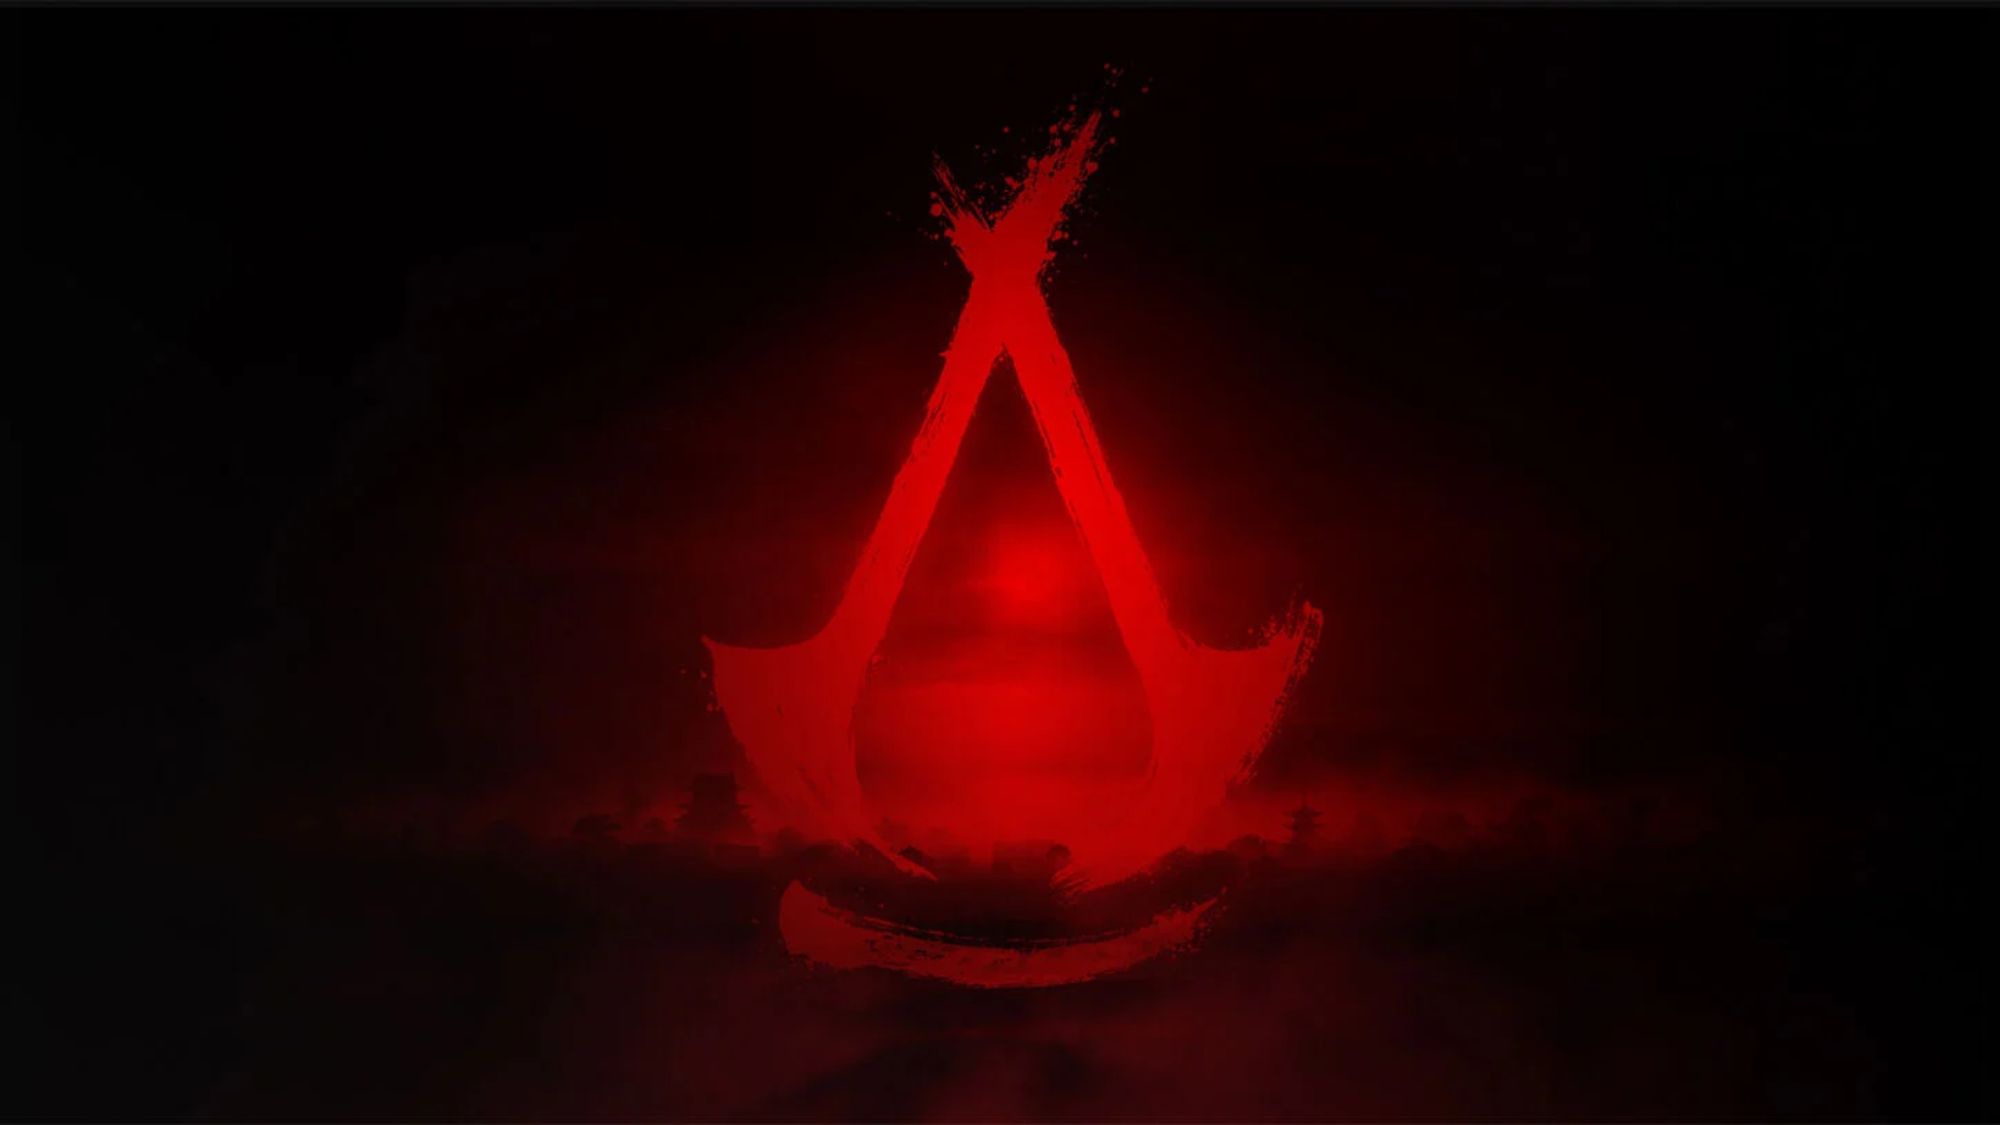 Маркетинг Assassin’s Creed Shadows полон скрытых загадок, но фанаты, возможно, уже решили некоторые из них.